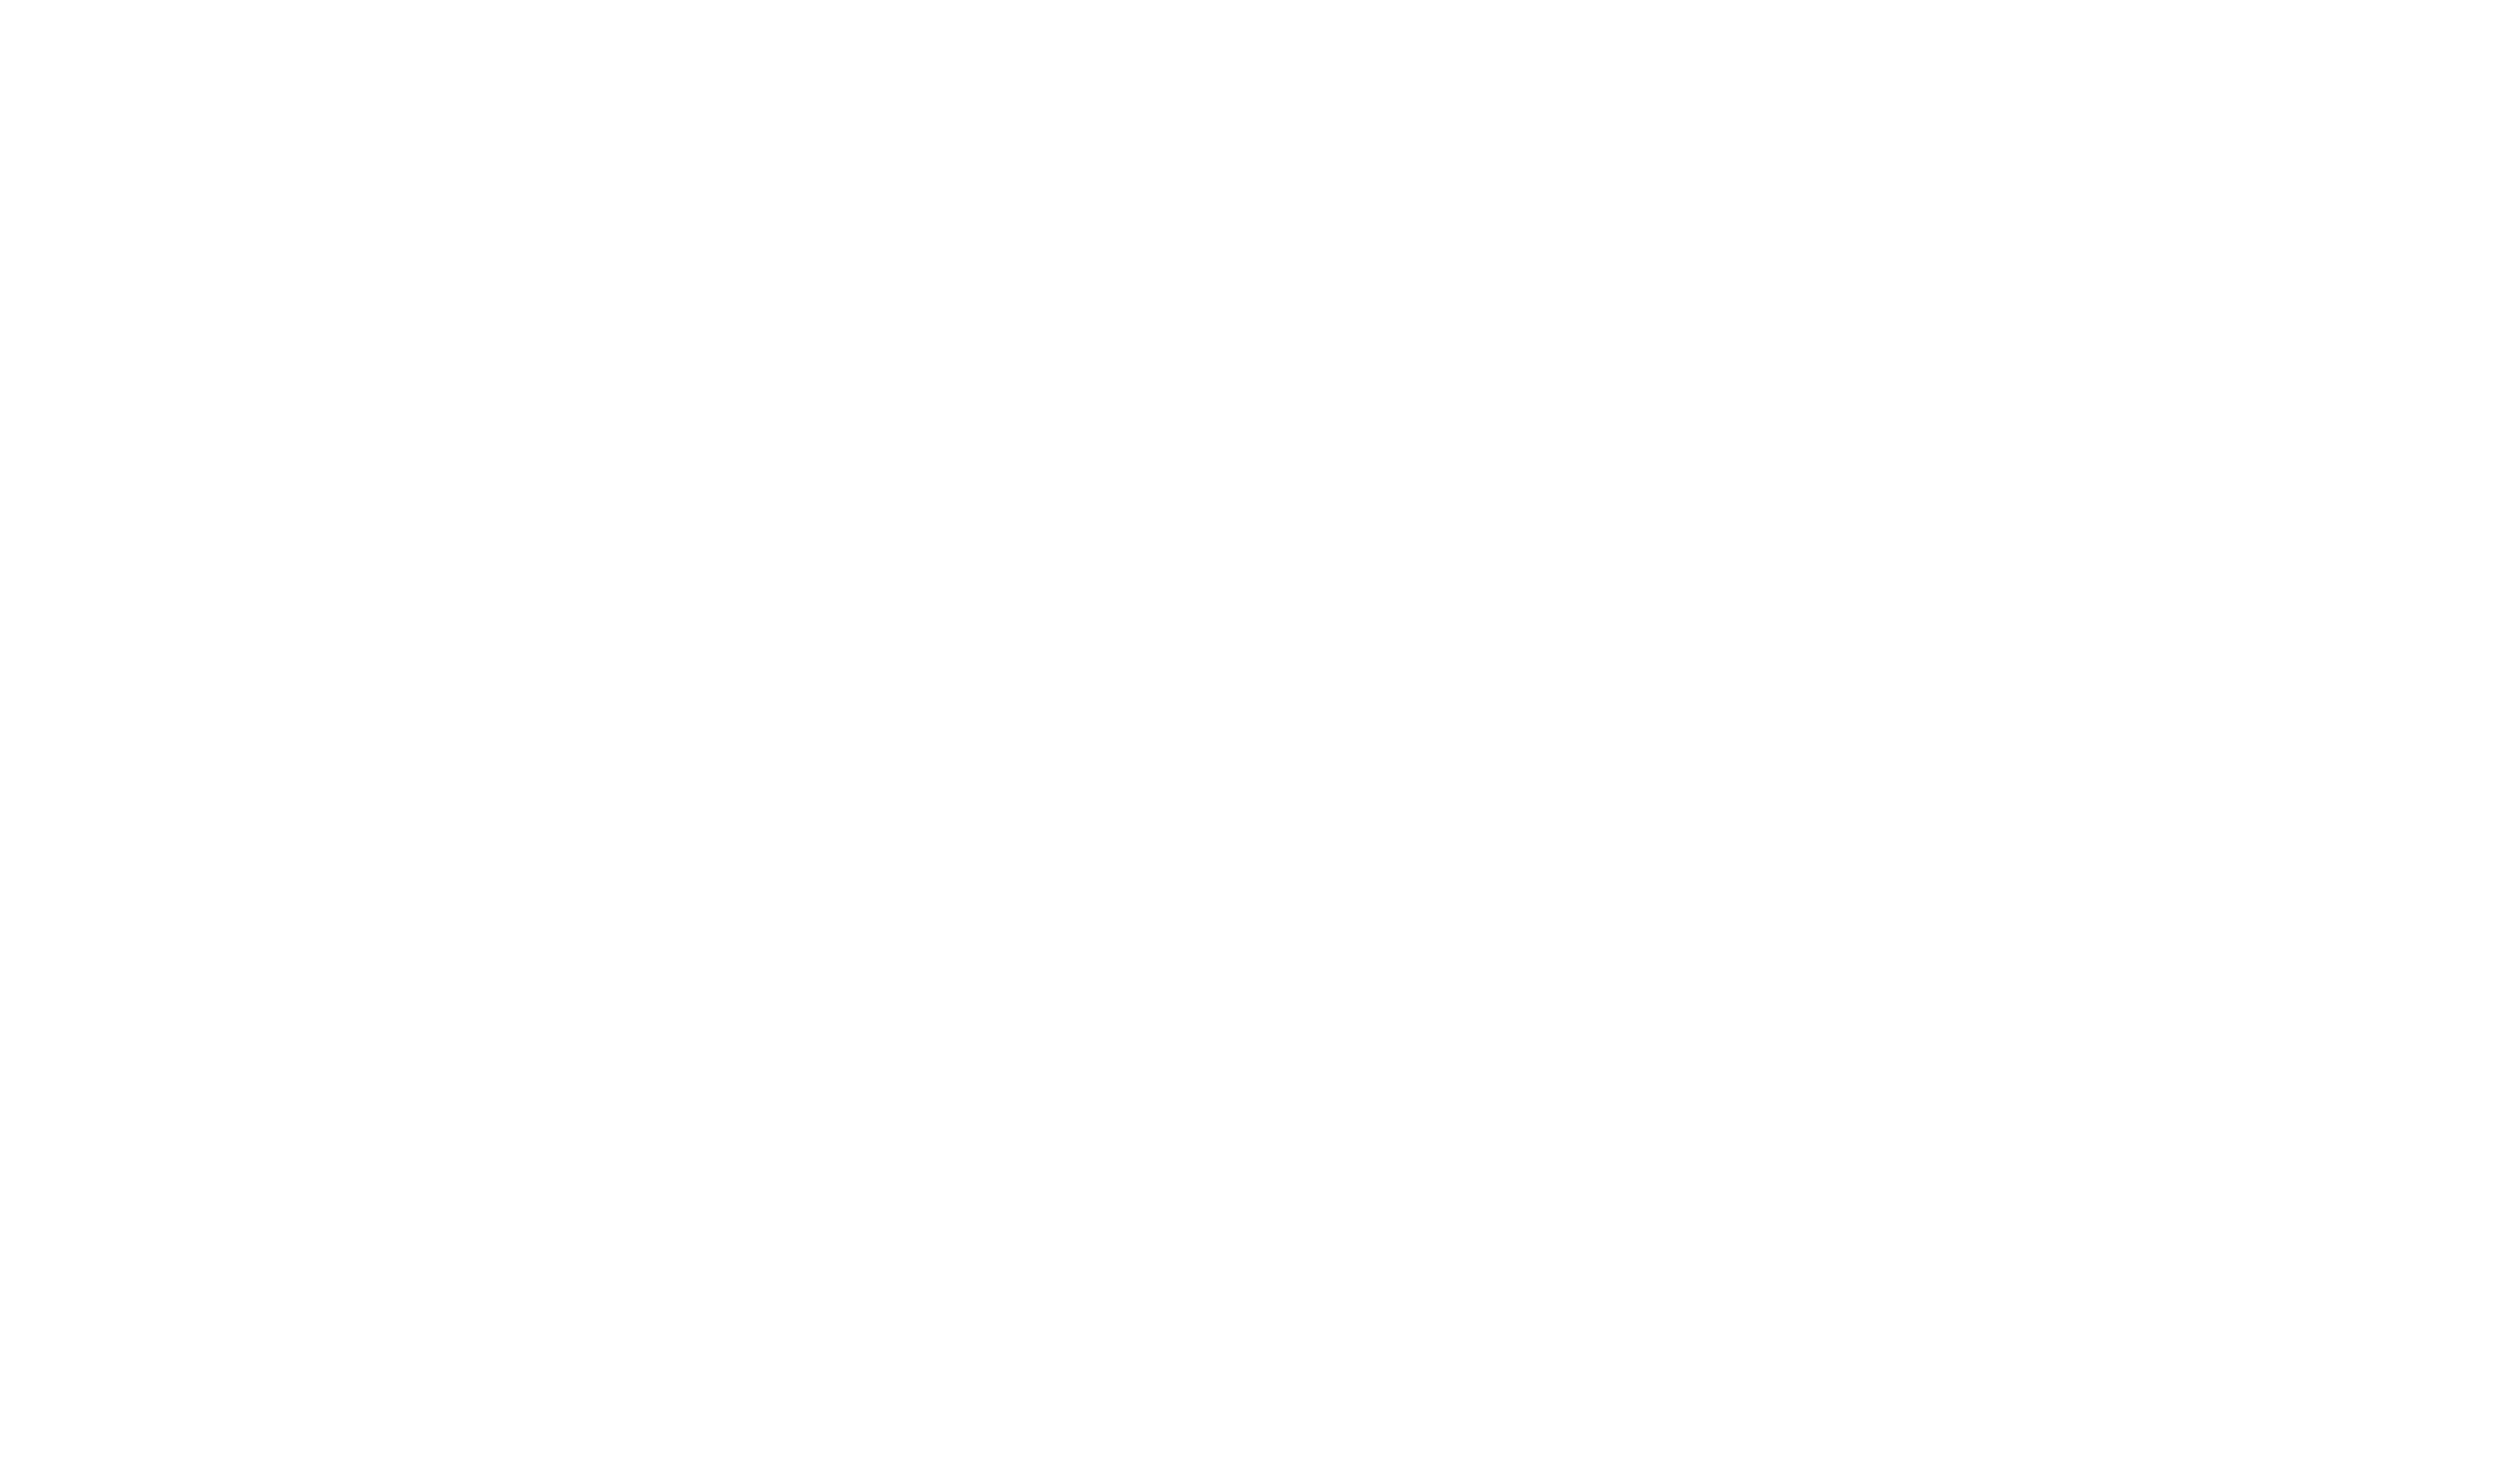 Gorilla x HubSpot gold logo